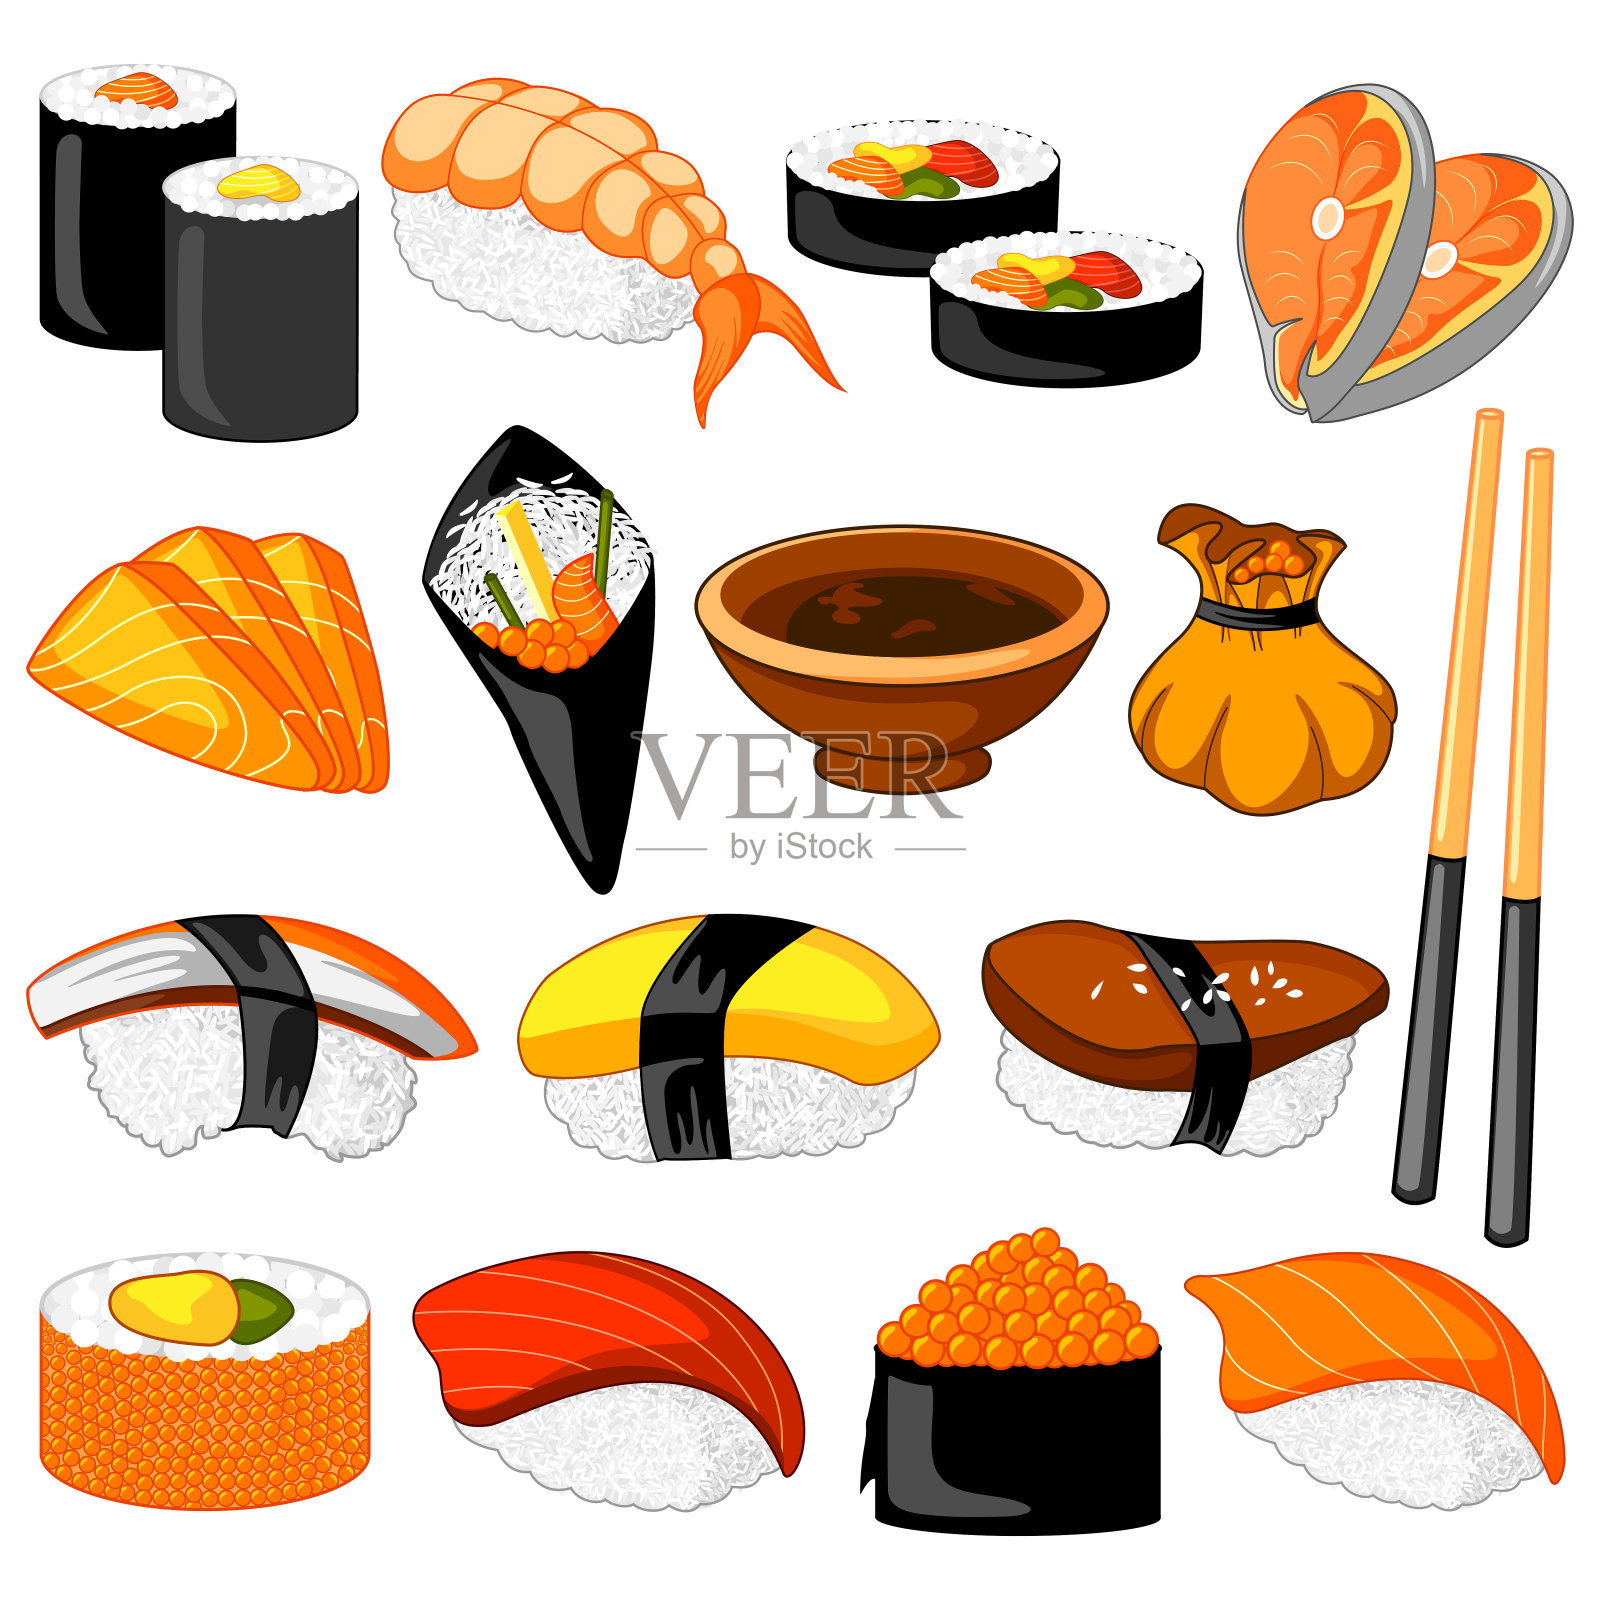 不同种类的寿司东方食品插画图片素材